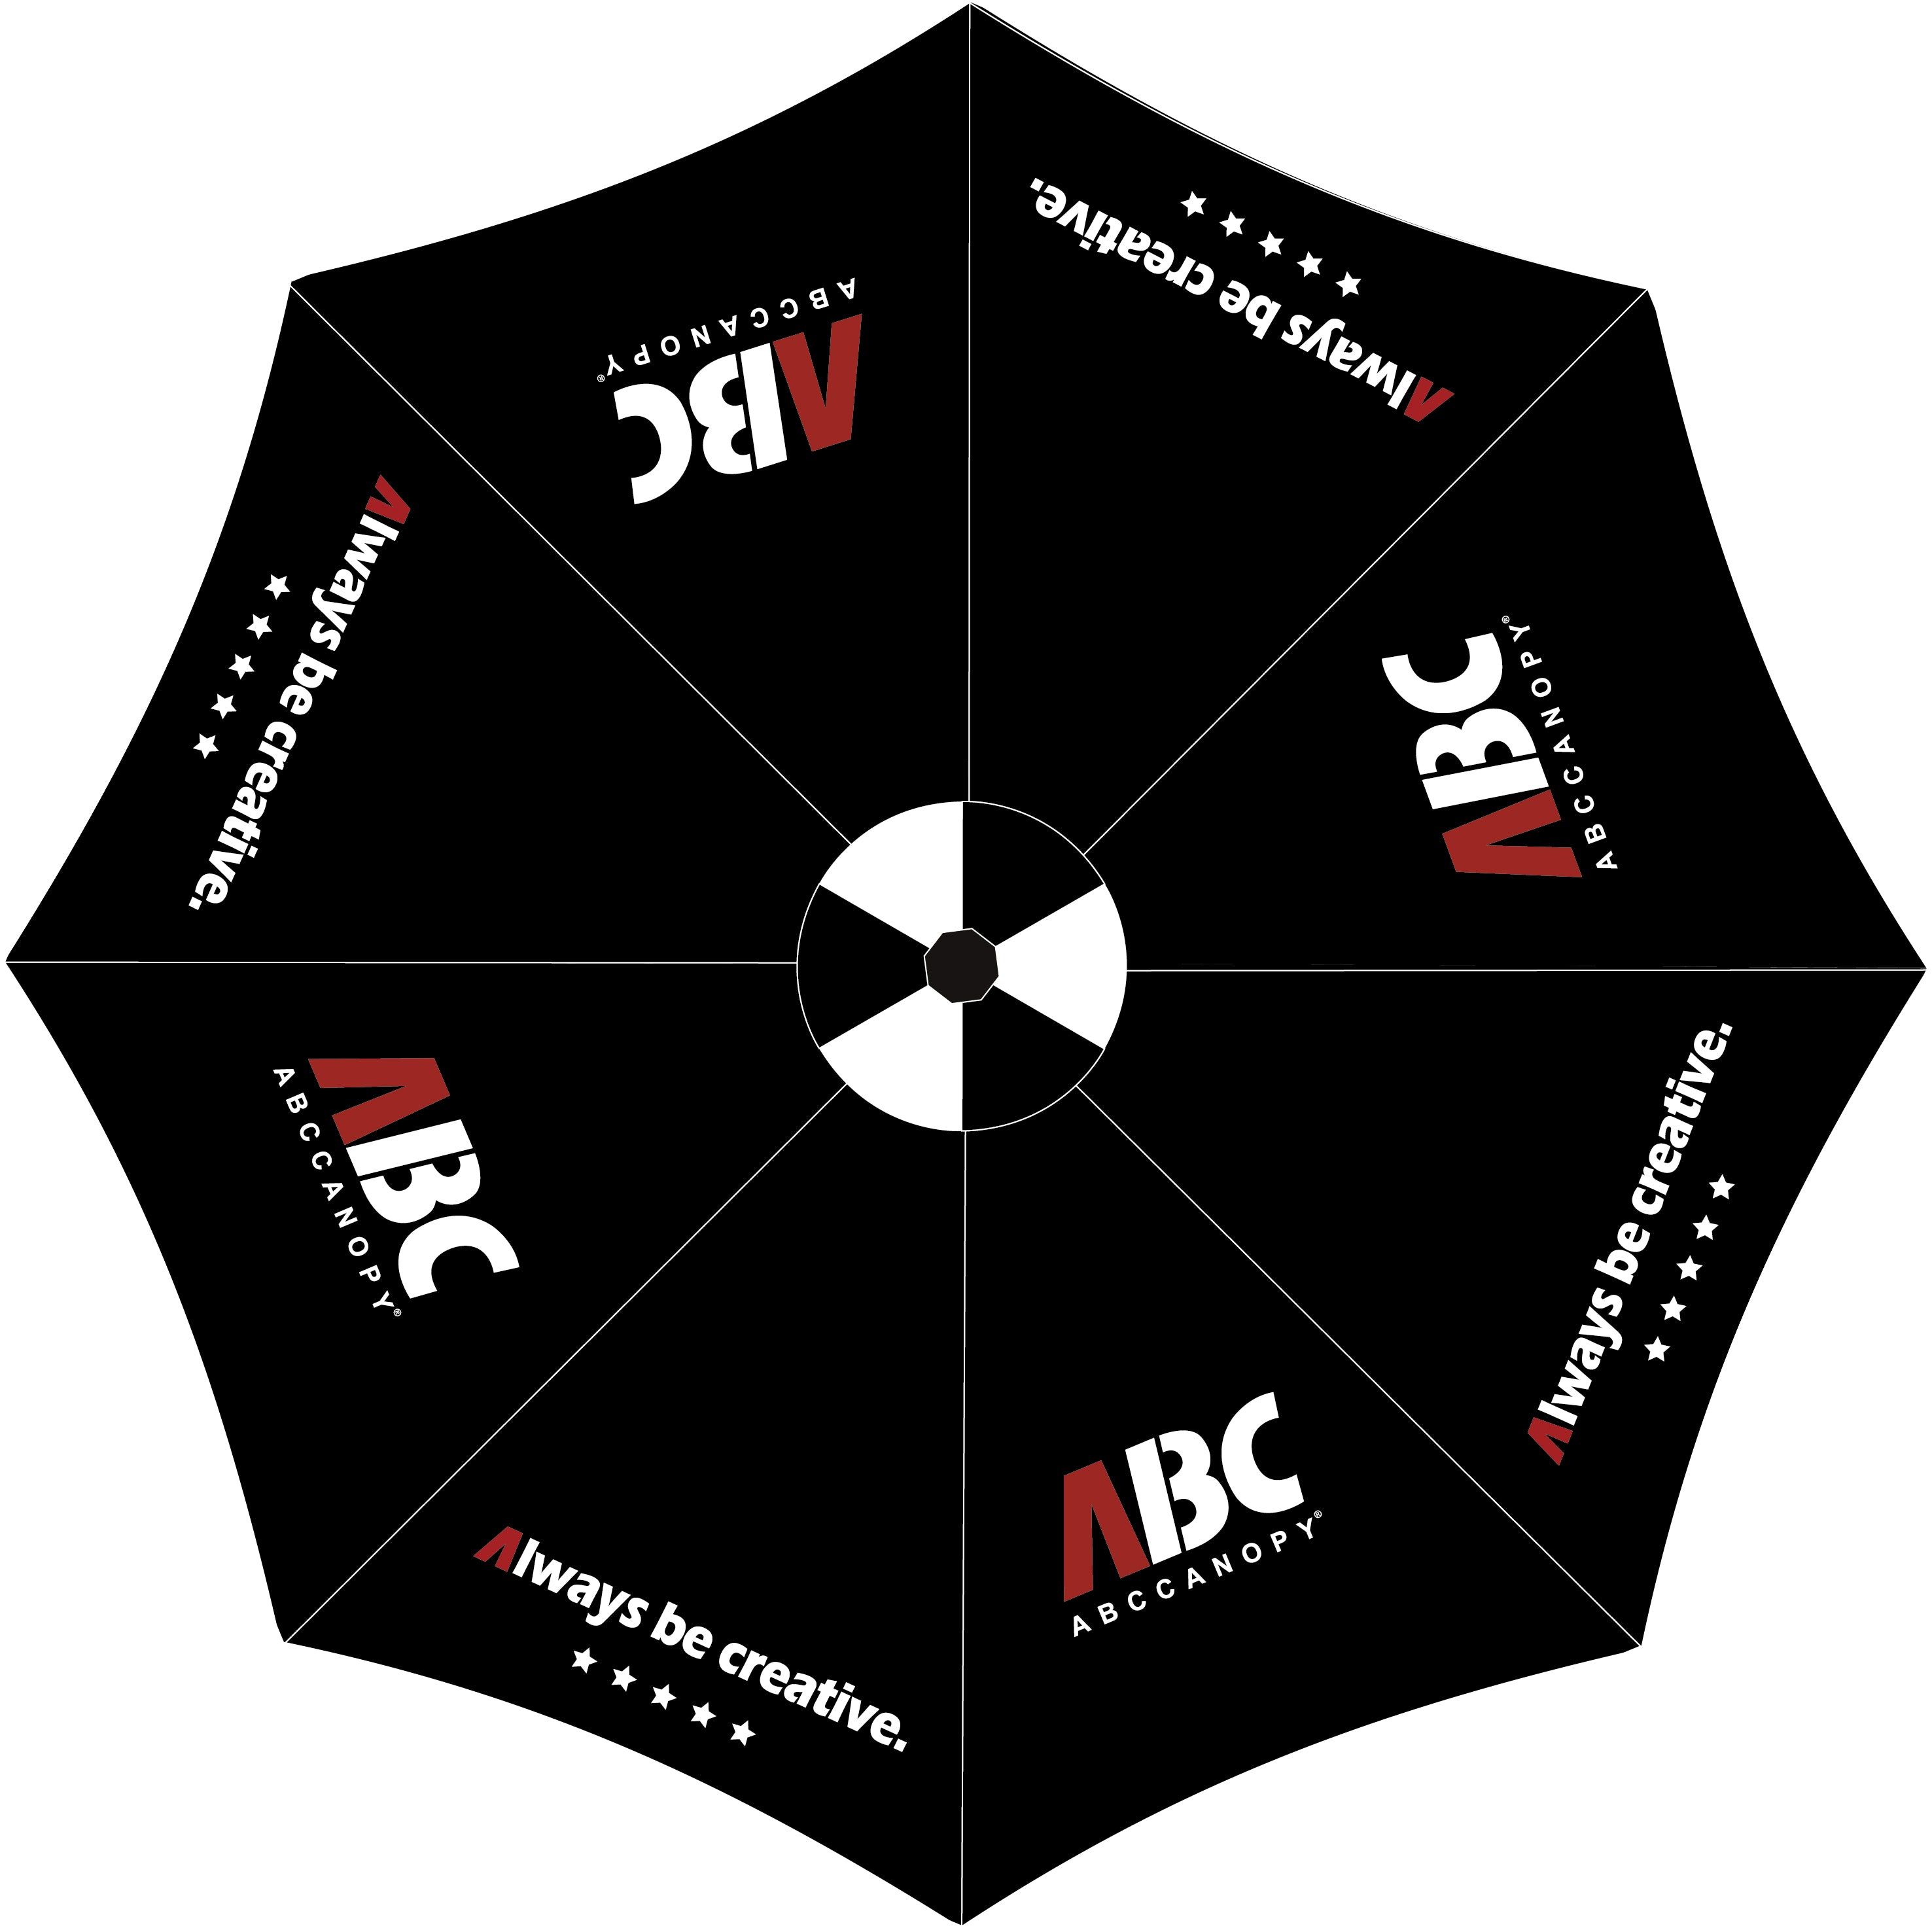 9FT Custom Outdoor Patio Umbrella